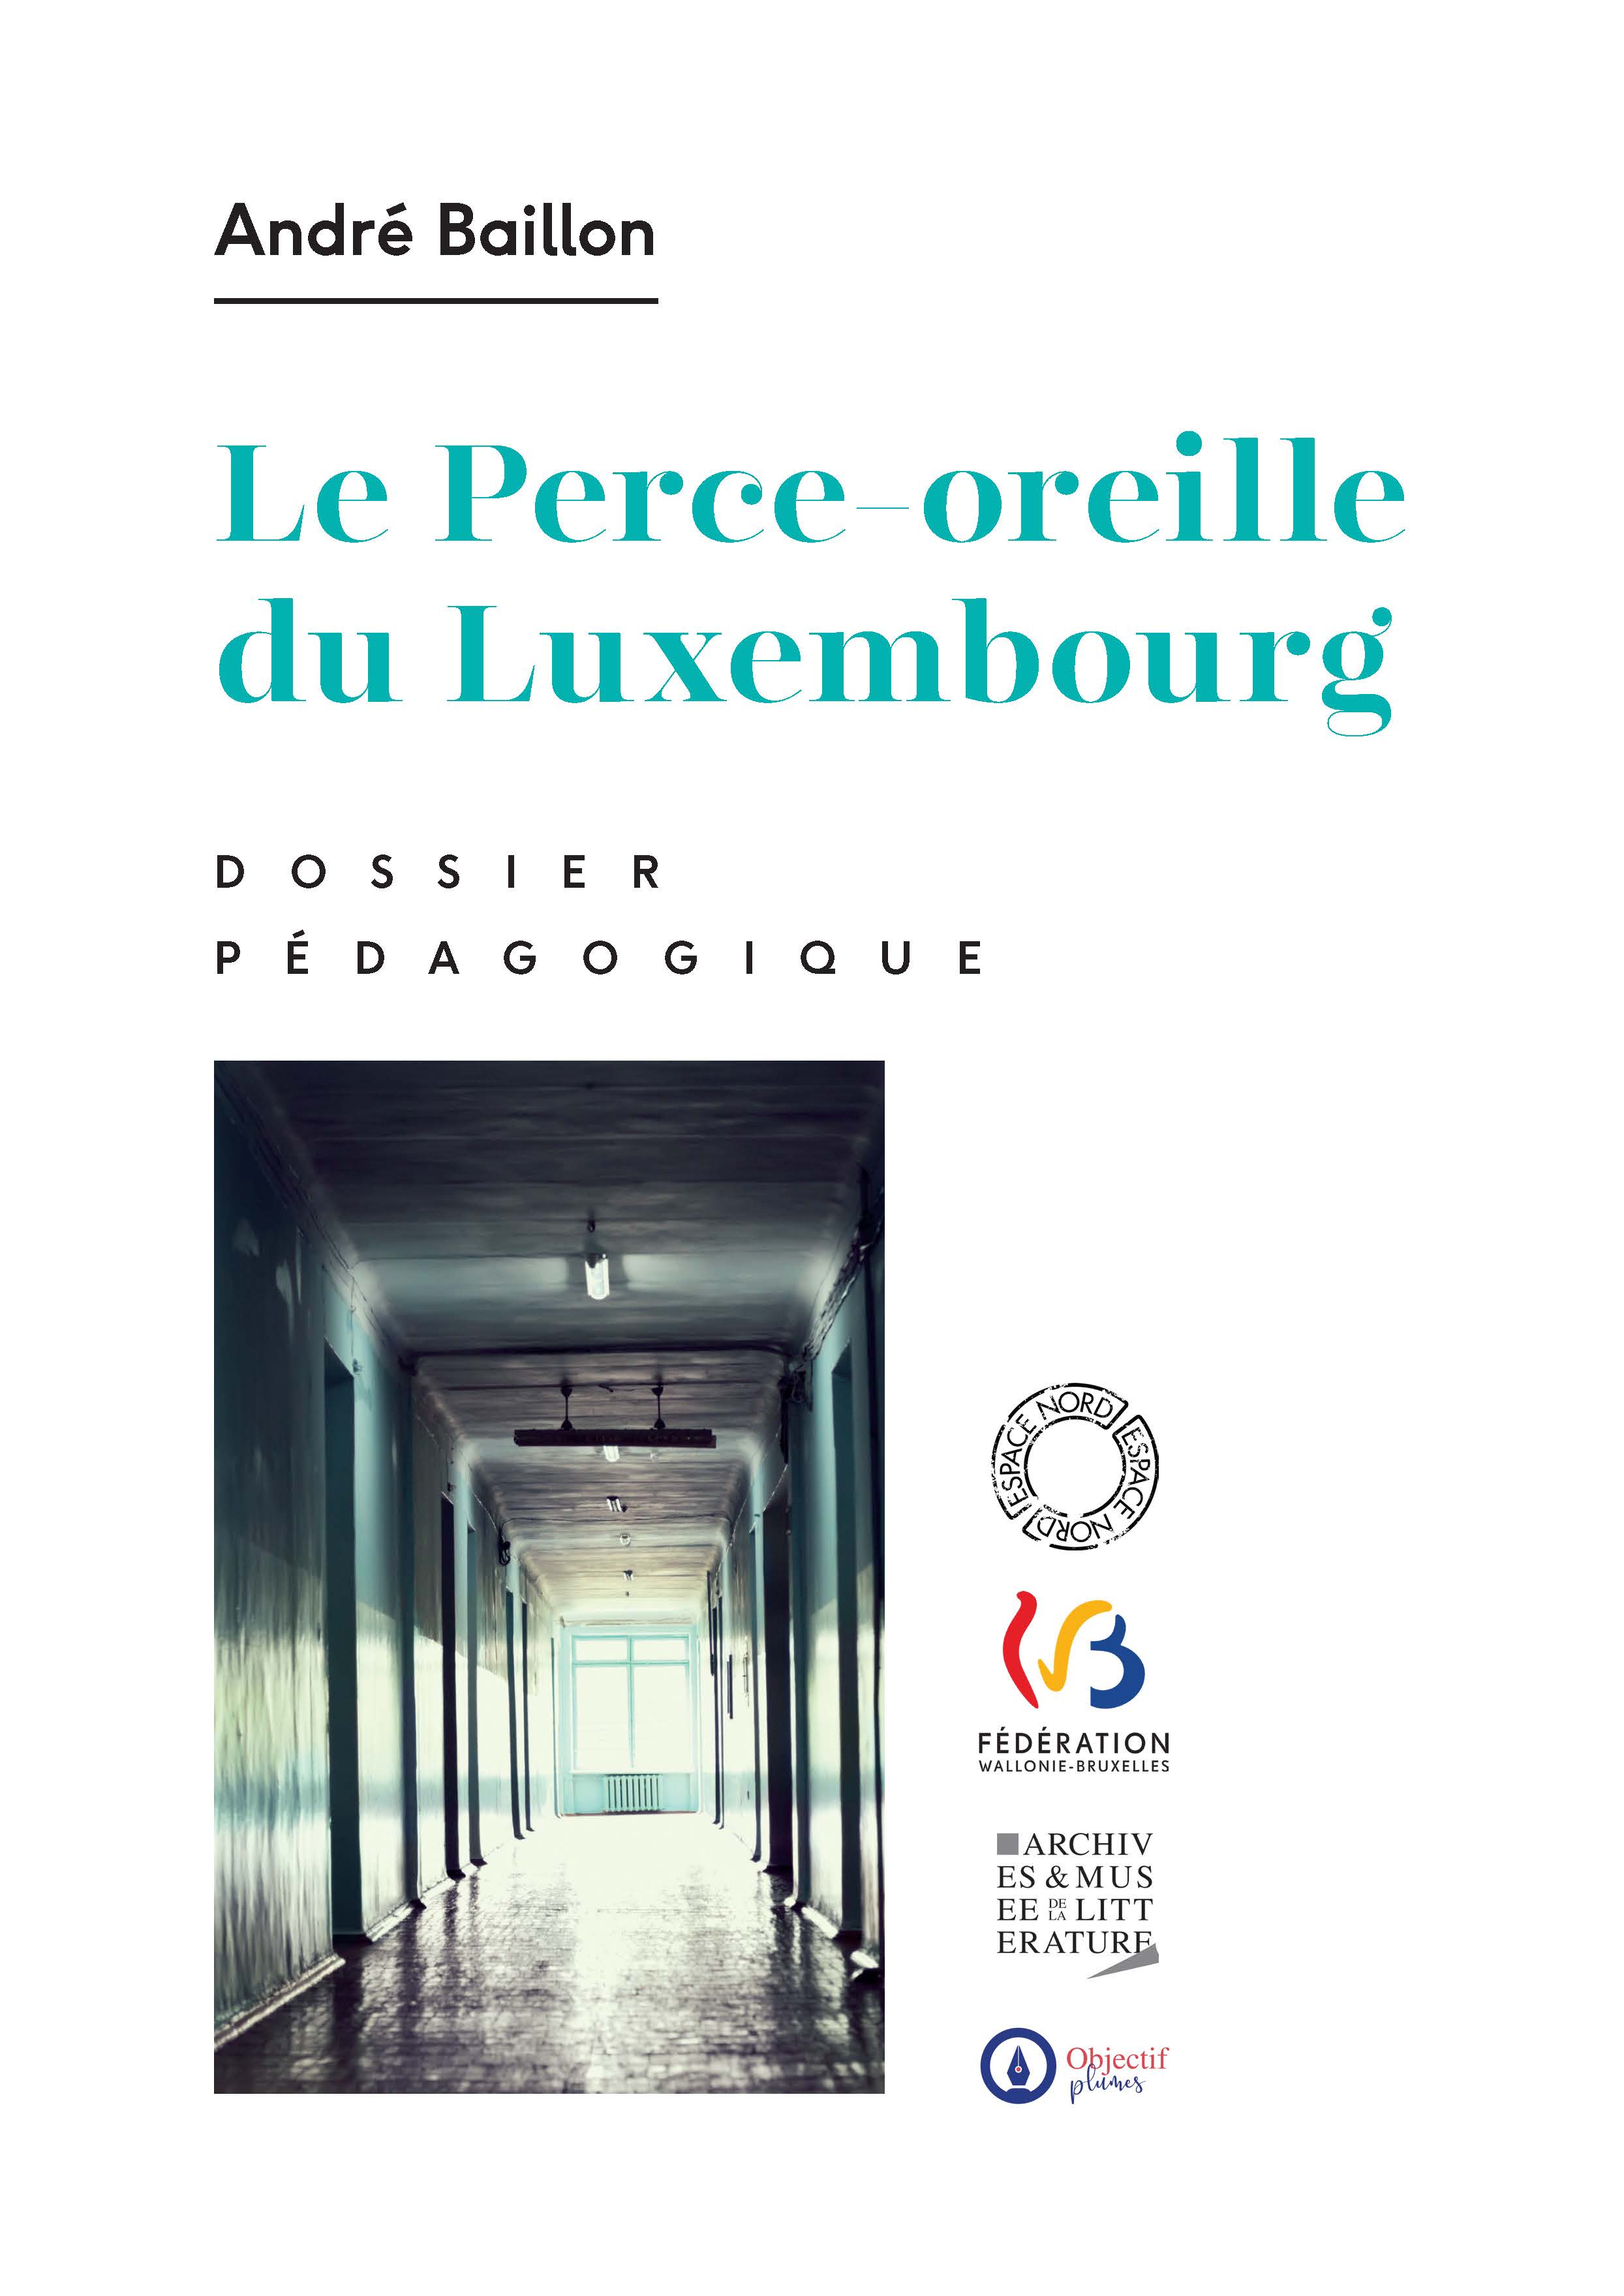 Dossier pédagogique : Le Perce-oreille du Luxembourg